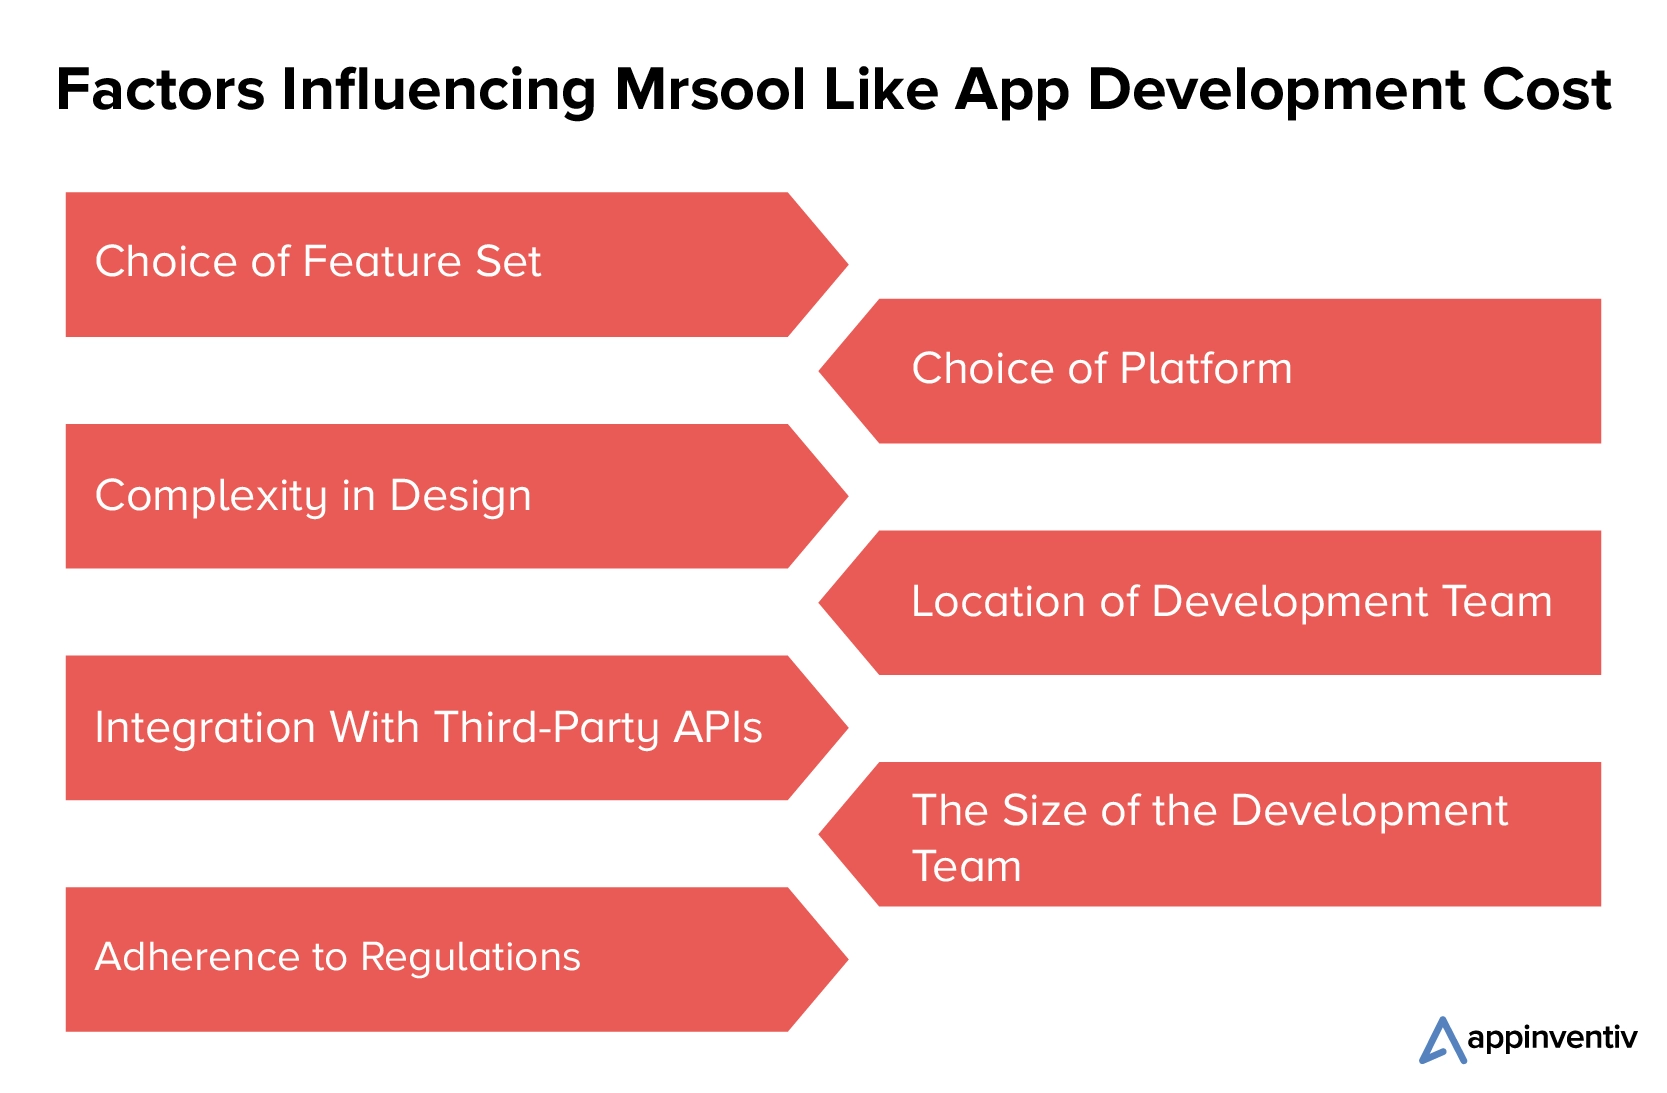 Factores que influyen en el costo de desarrollo de aplicaciones similares a Mrsool